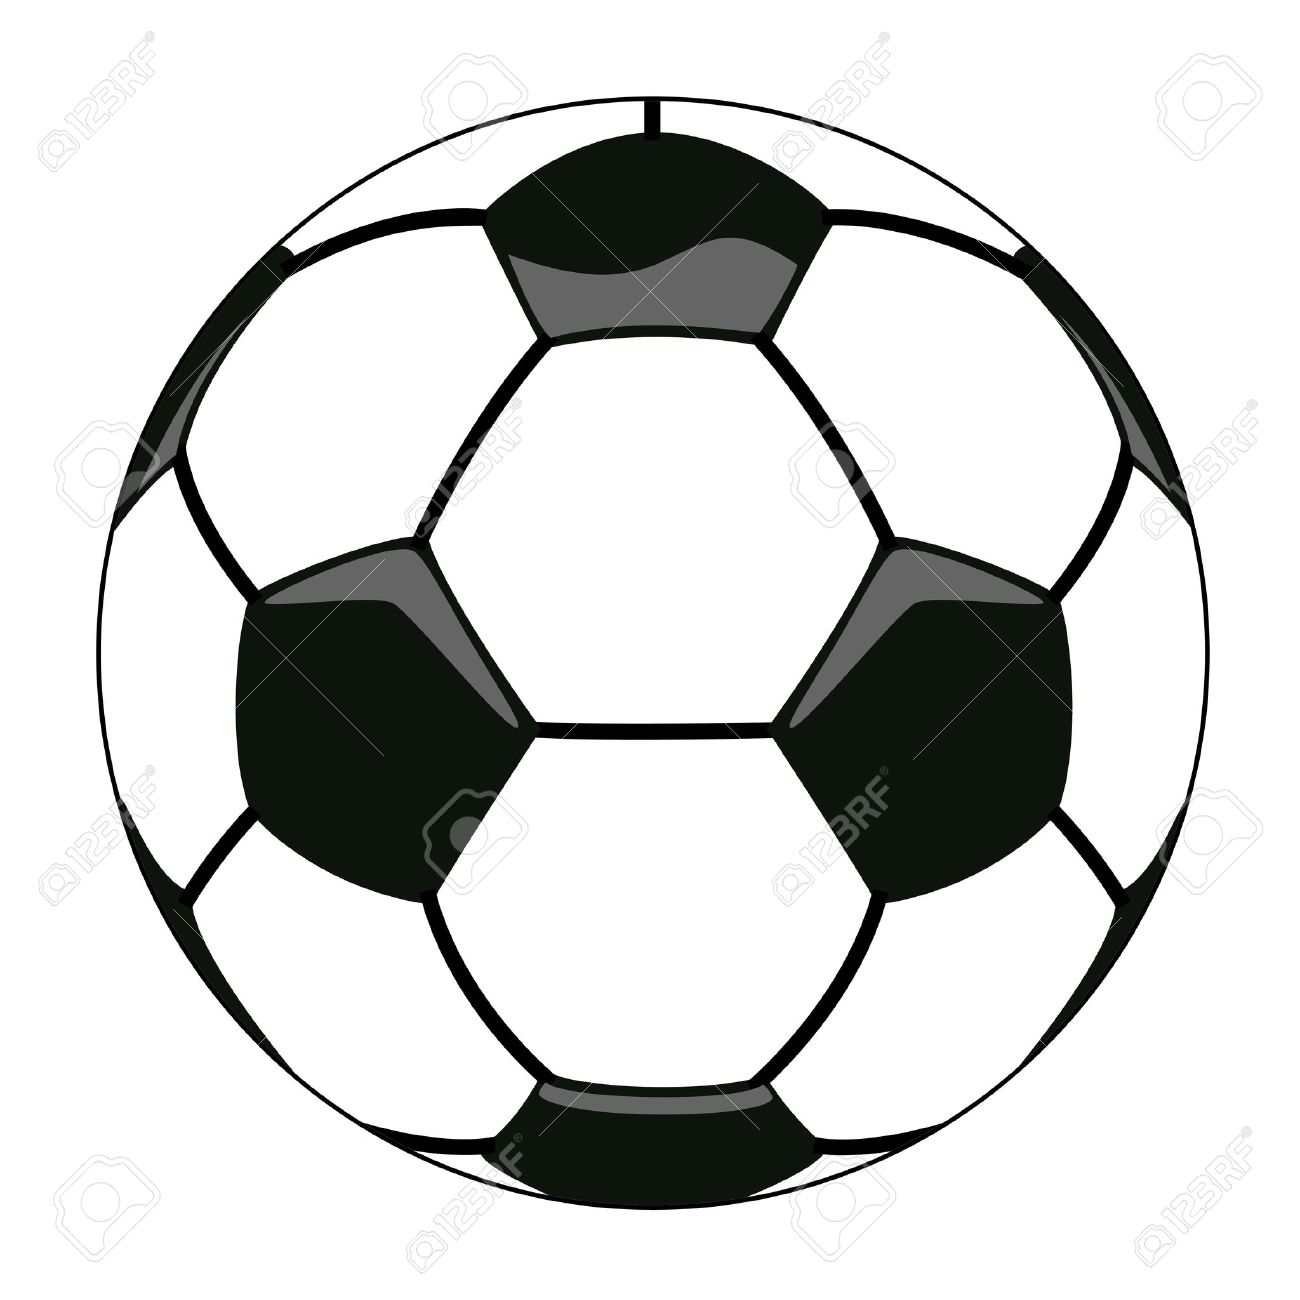 Vector - vector illustration of soccer ball clipart